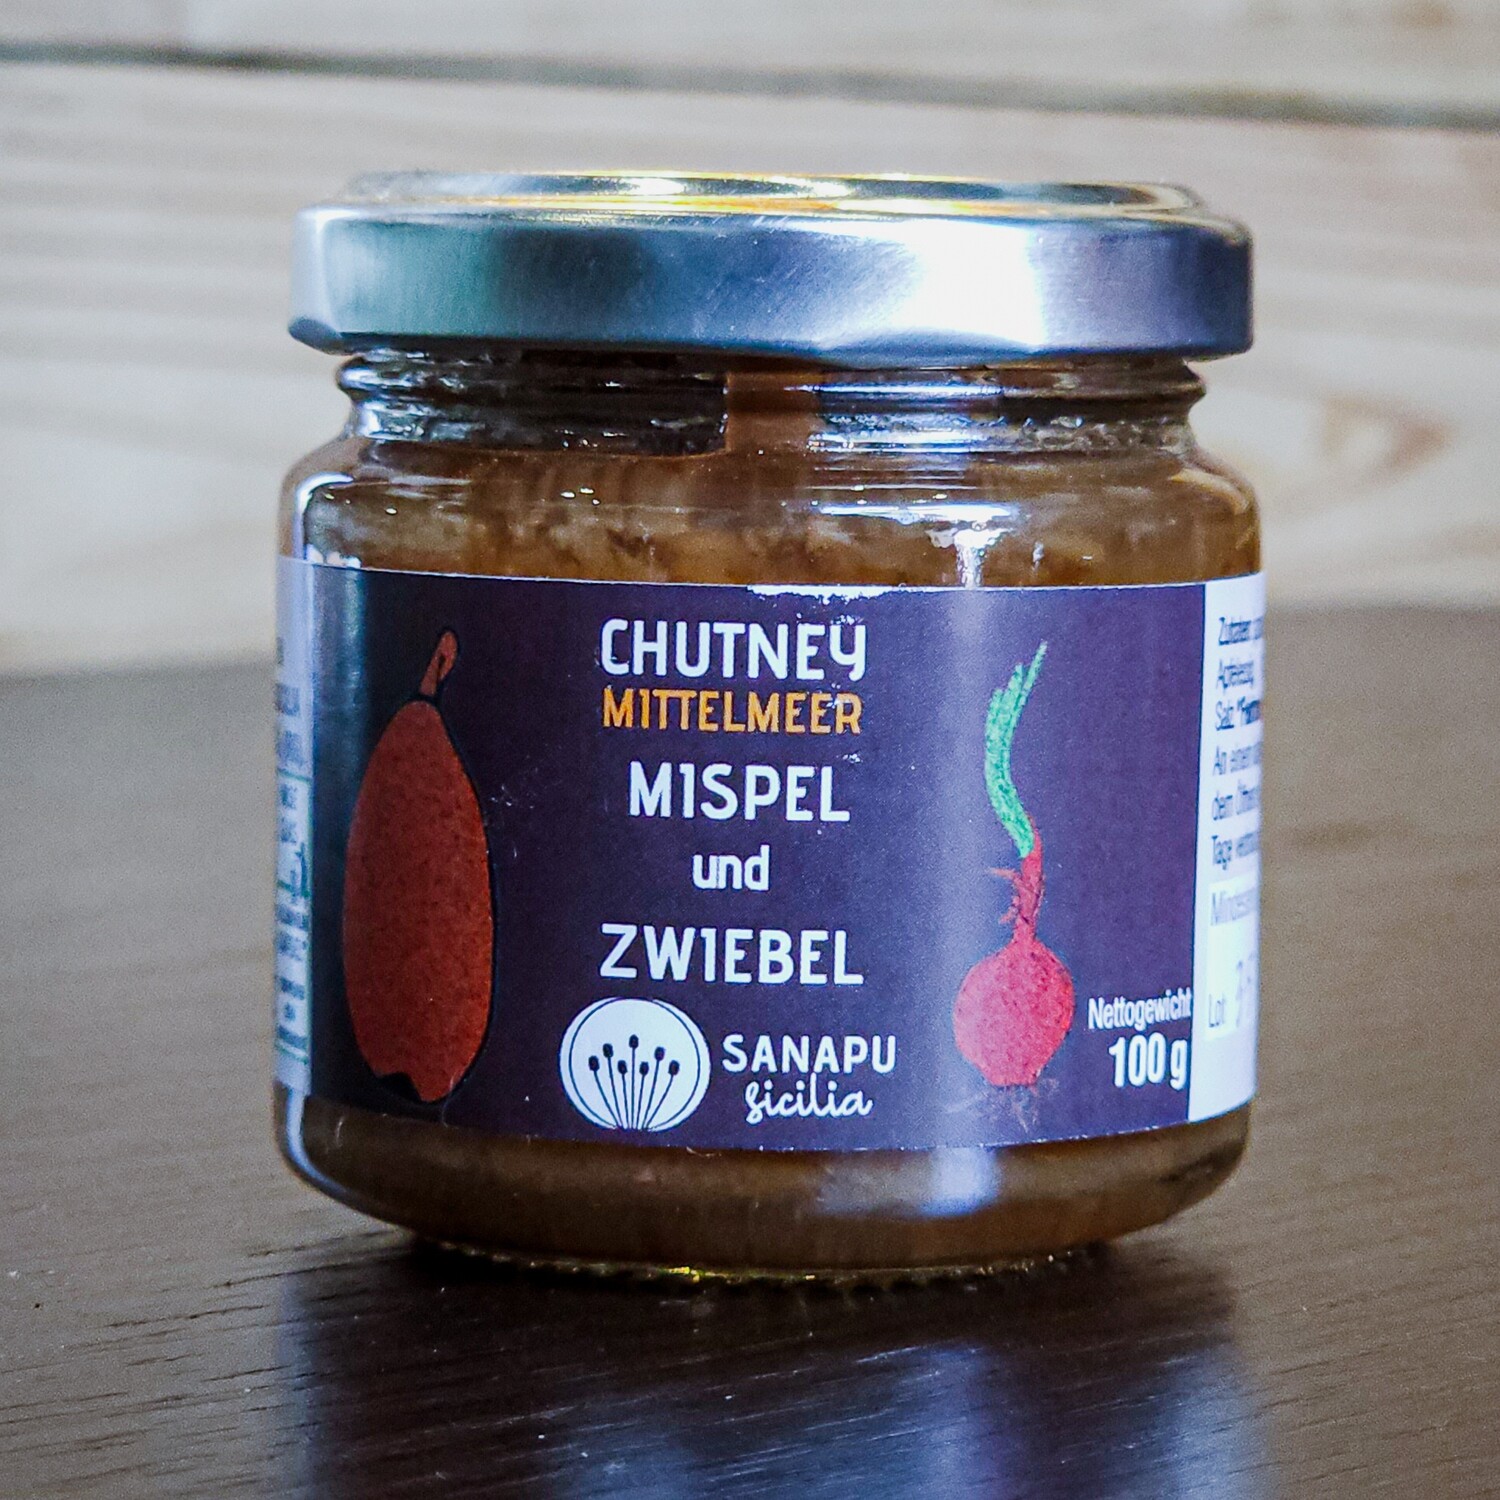 SANAPU Sicilia Chutney - Mispel & Zwiebel